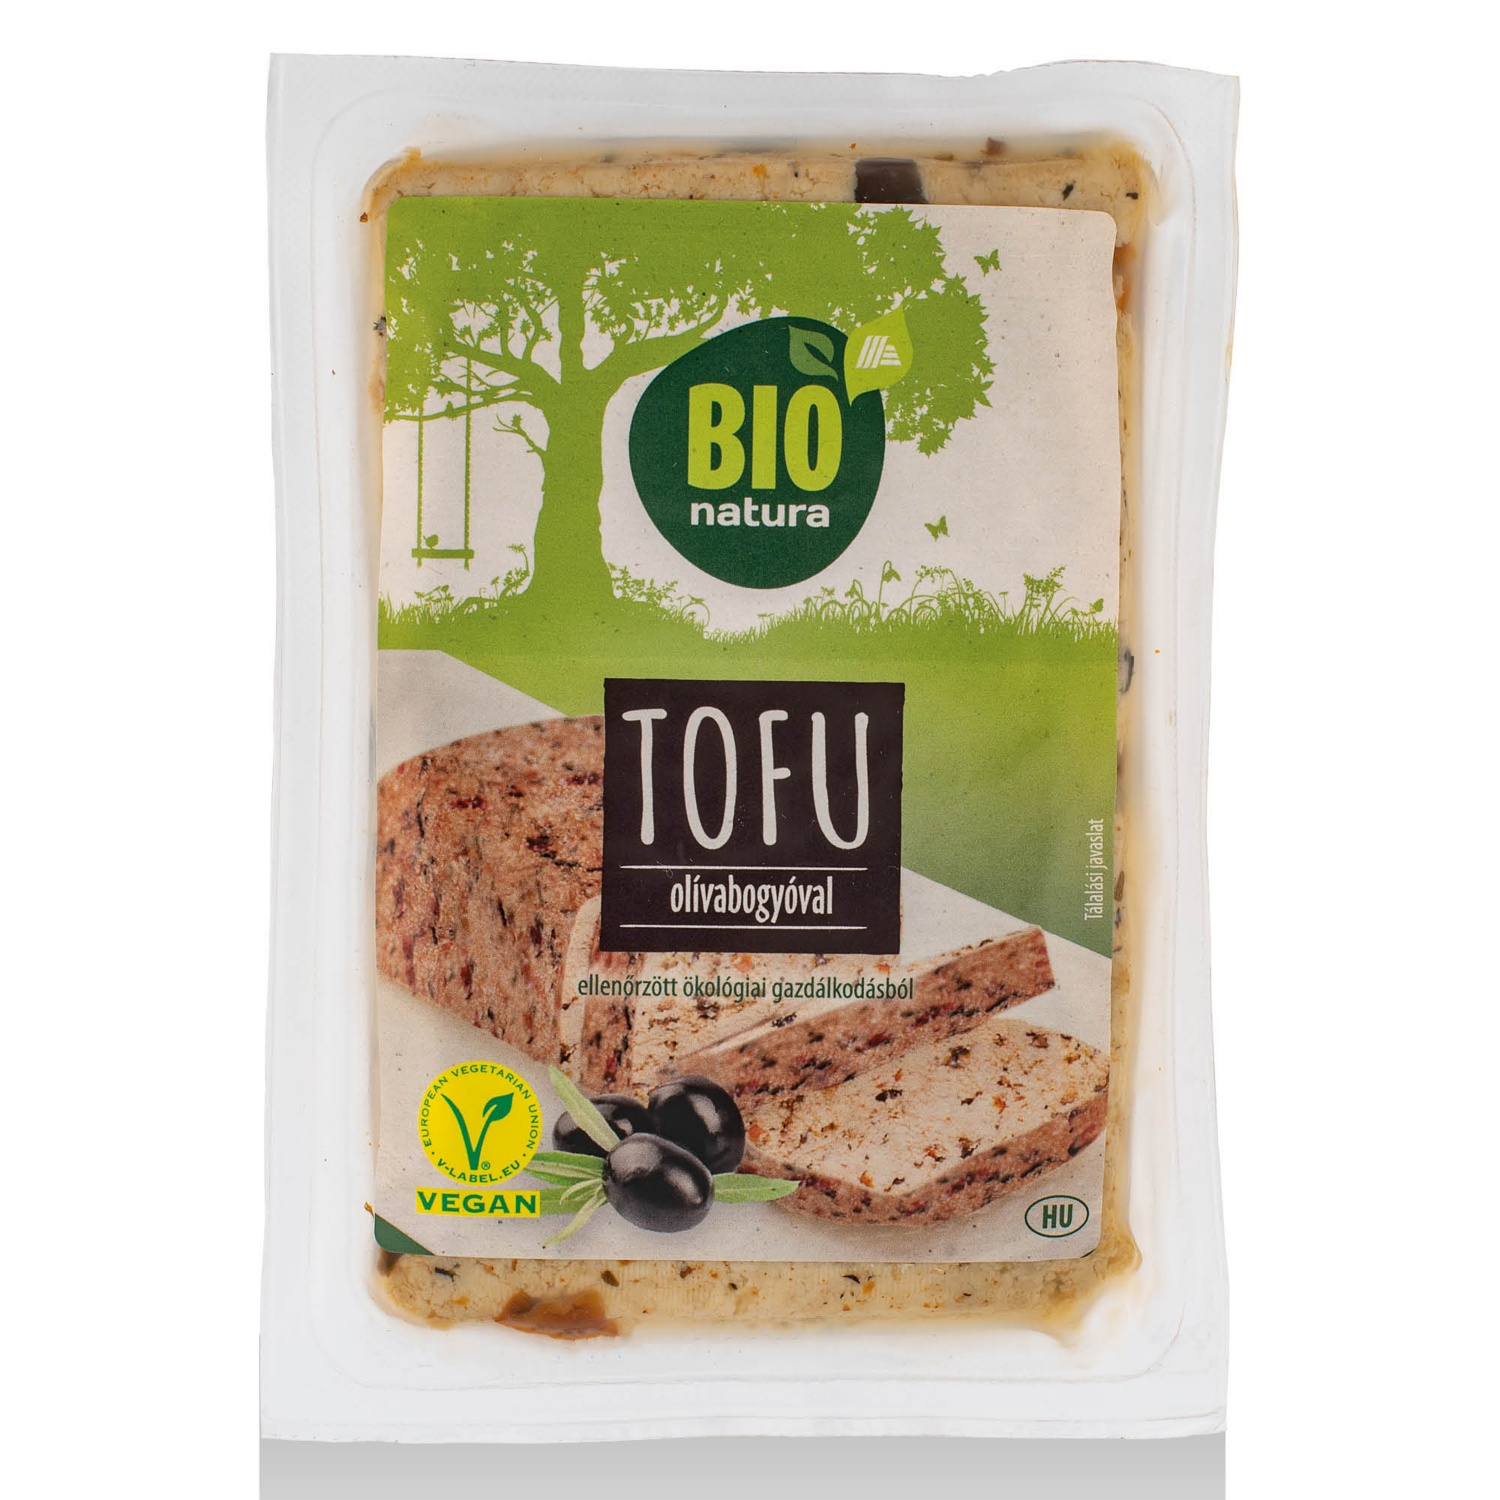 BIO NATURA Bio tofu, olívás, 200 g